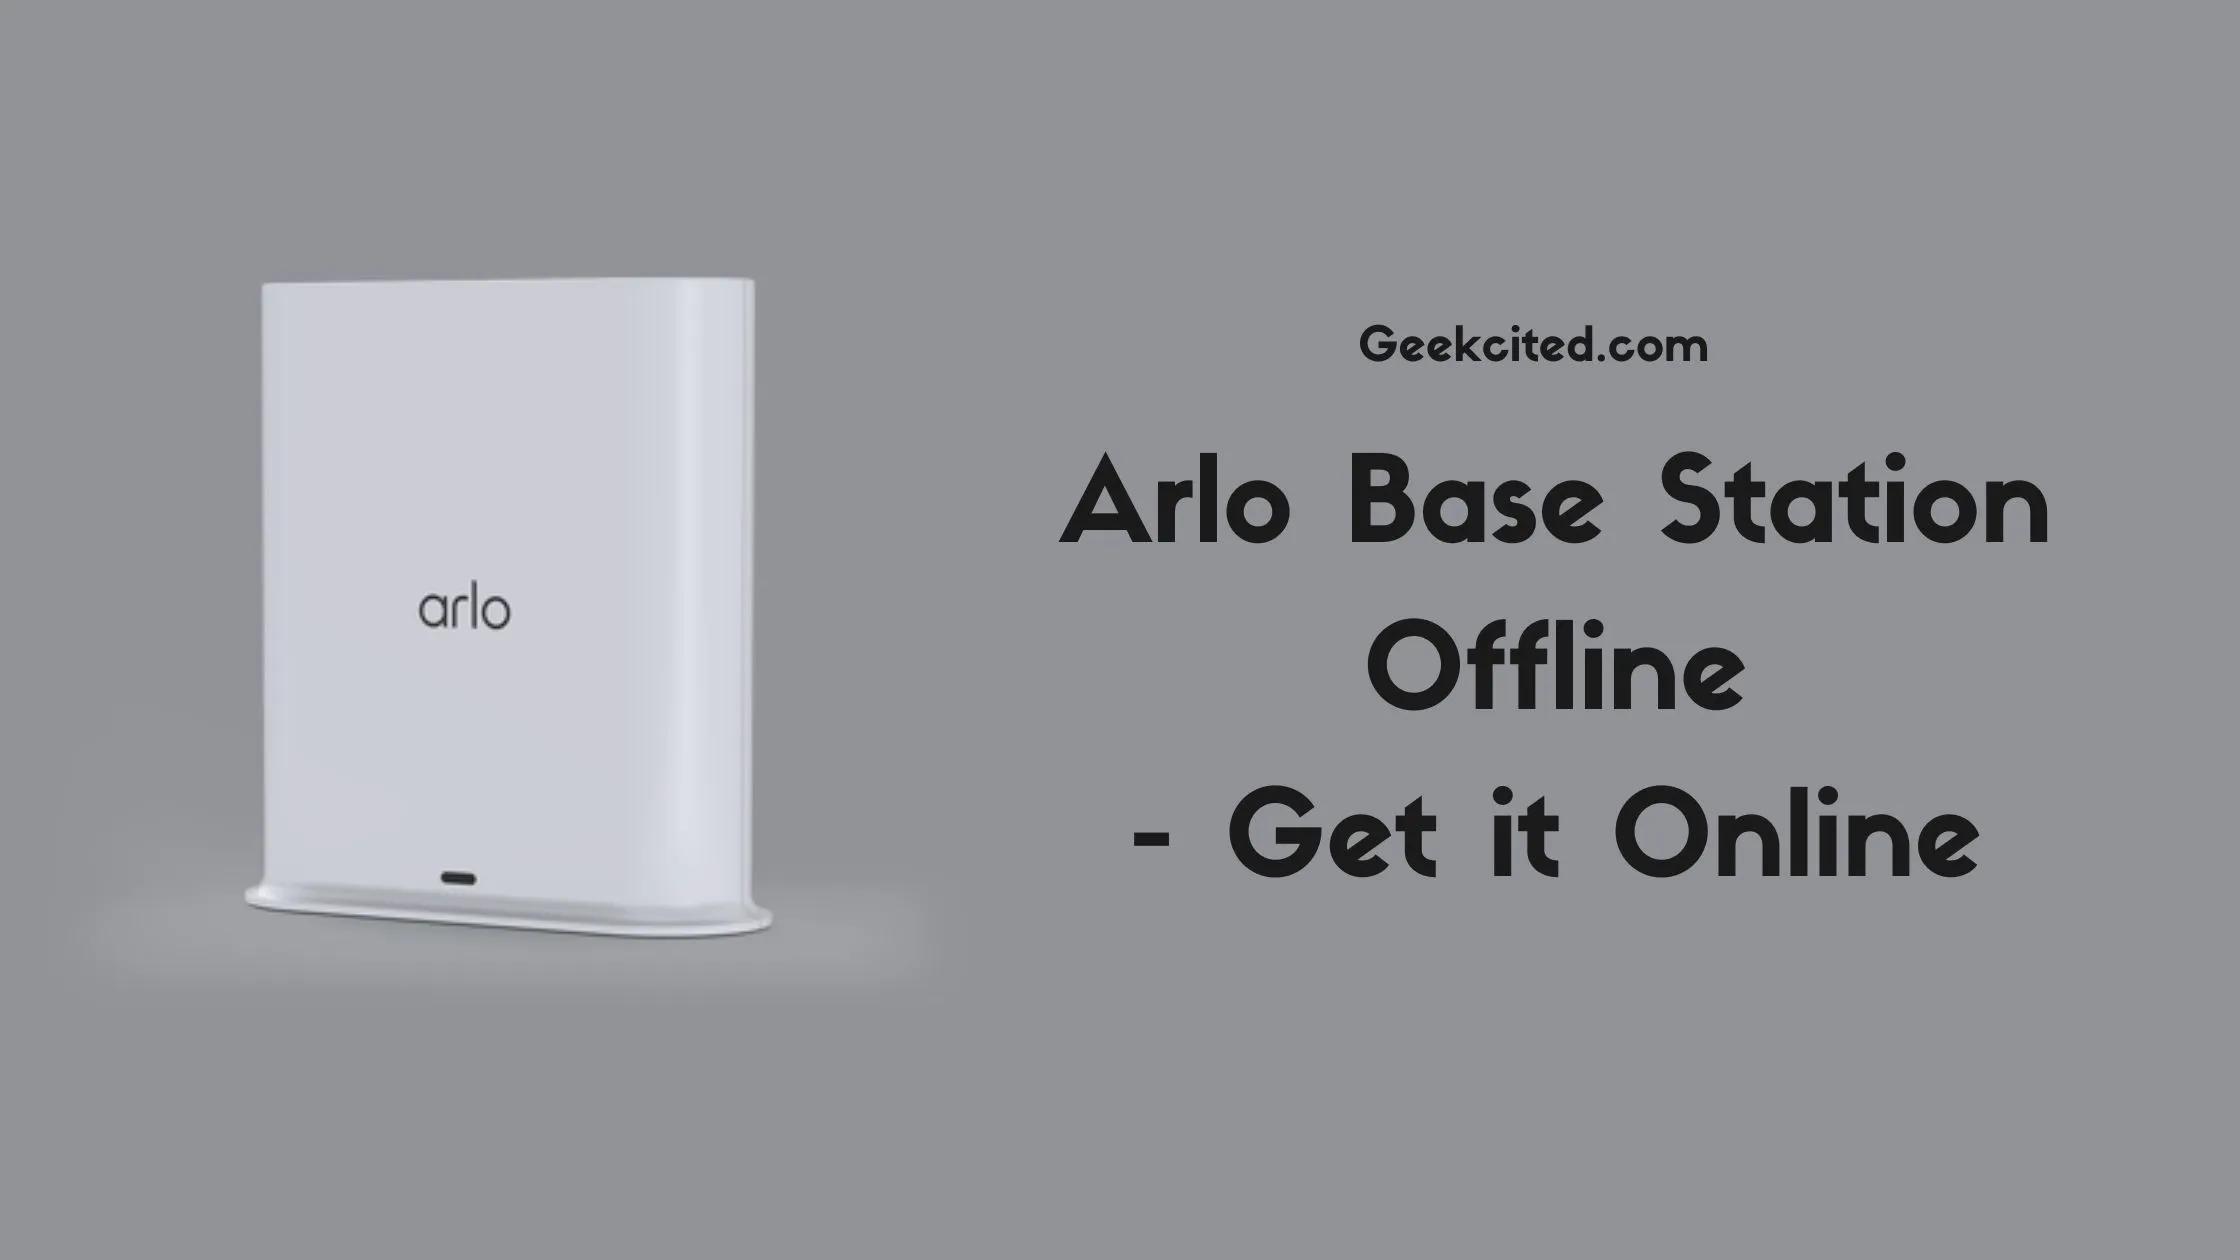 Arlo Base Station Offline